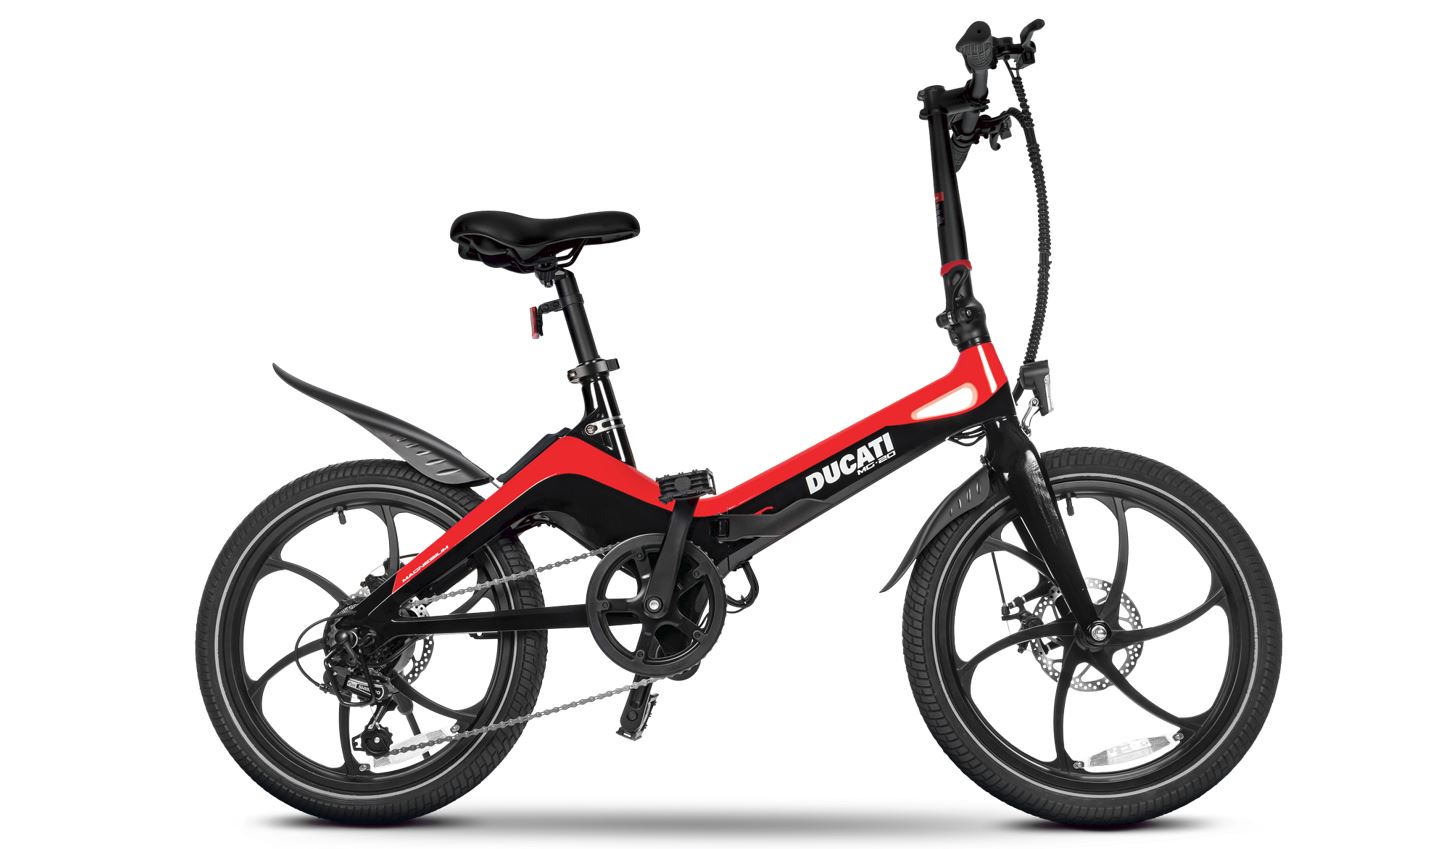 Bicicleta eléctrica de Ducati que en estos momentos vende Esprinet. 